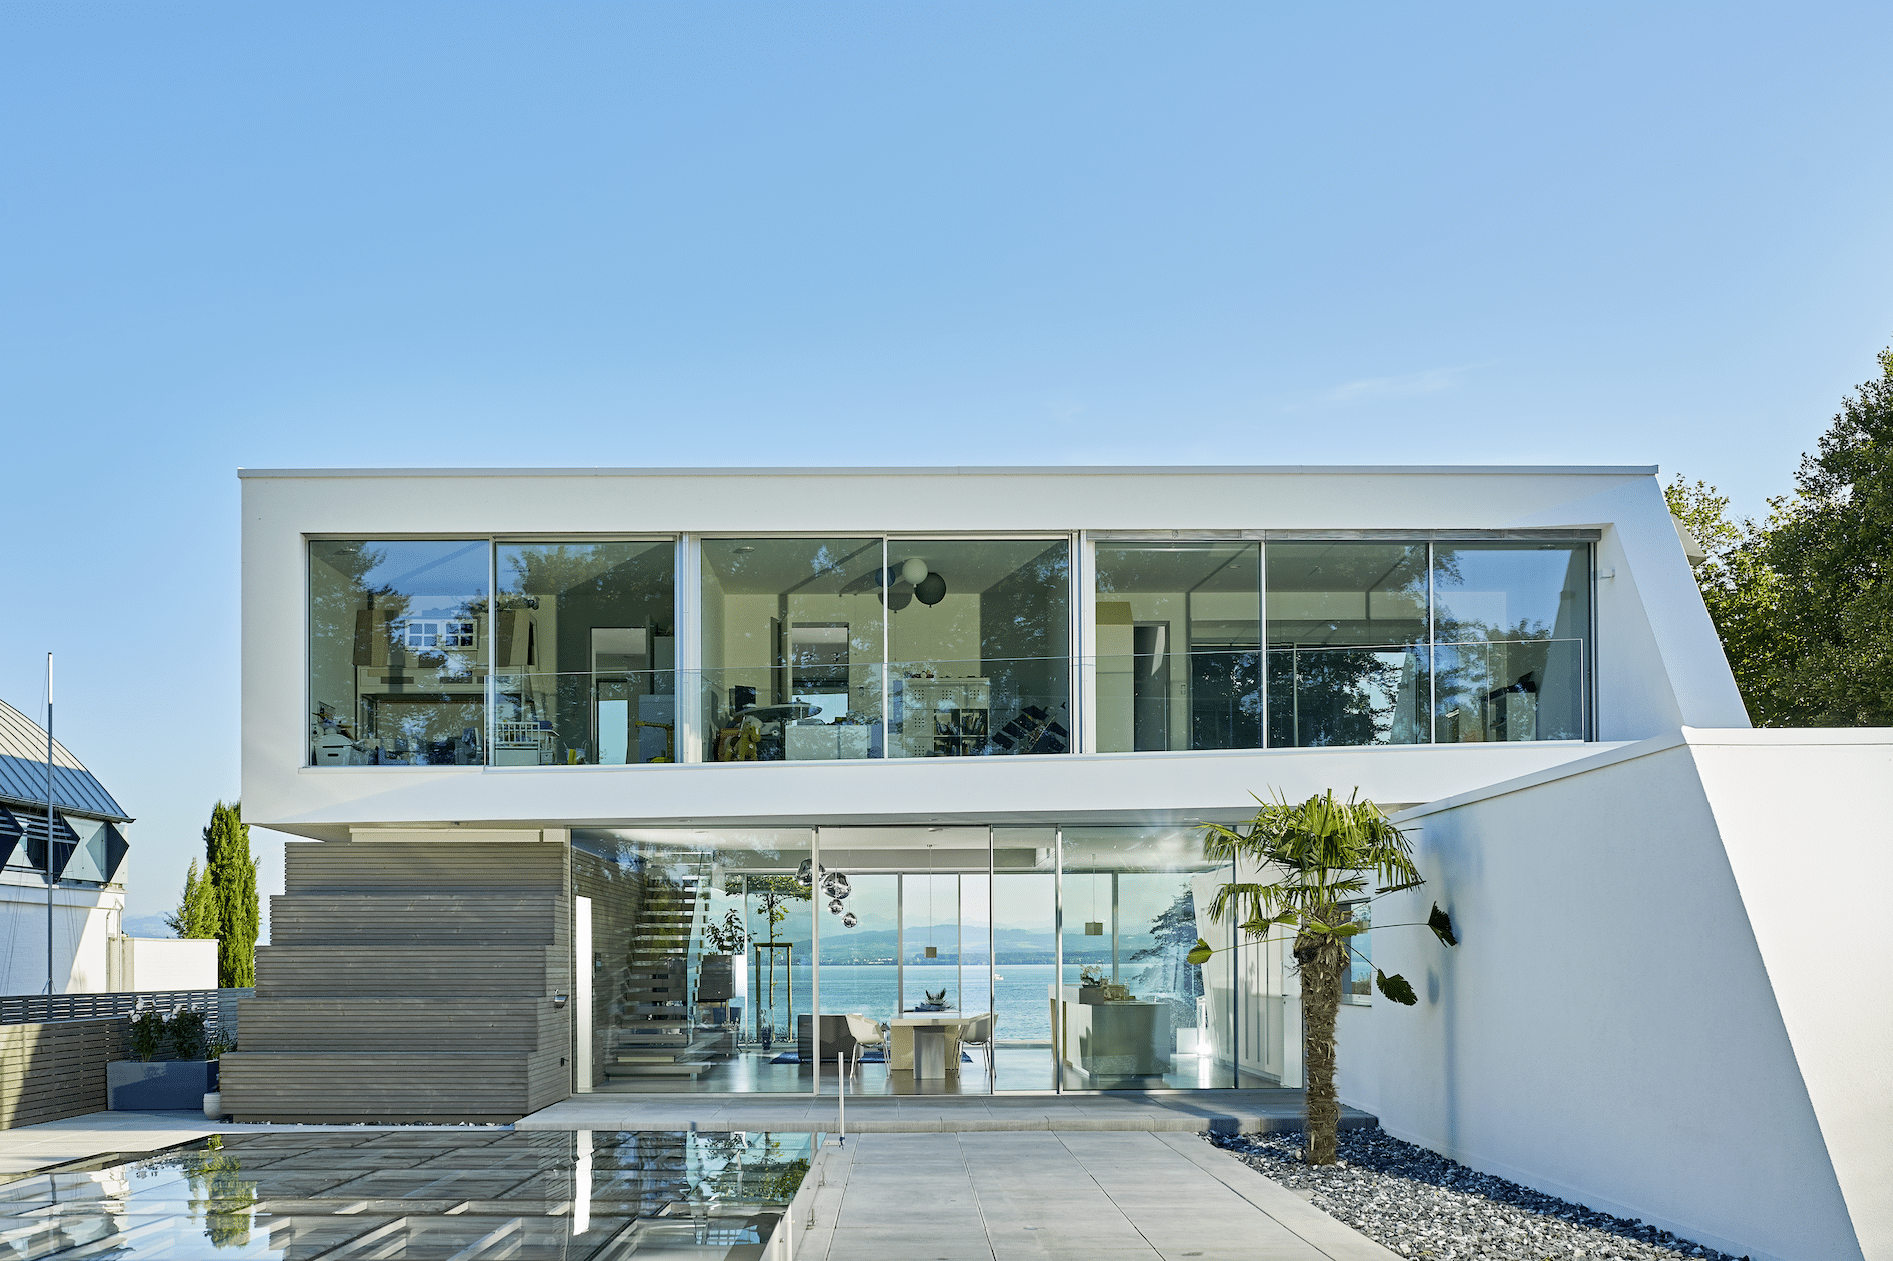 Architektonische Villa am Bodensee mit Ganzglassystemen von Solarlux.